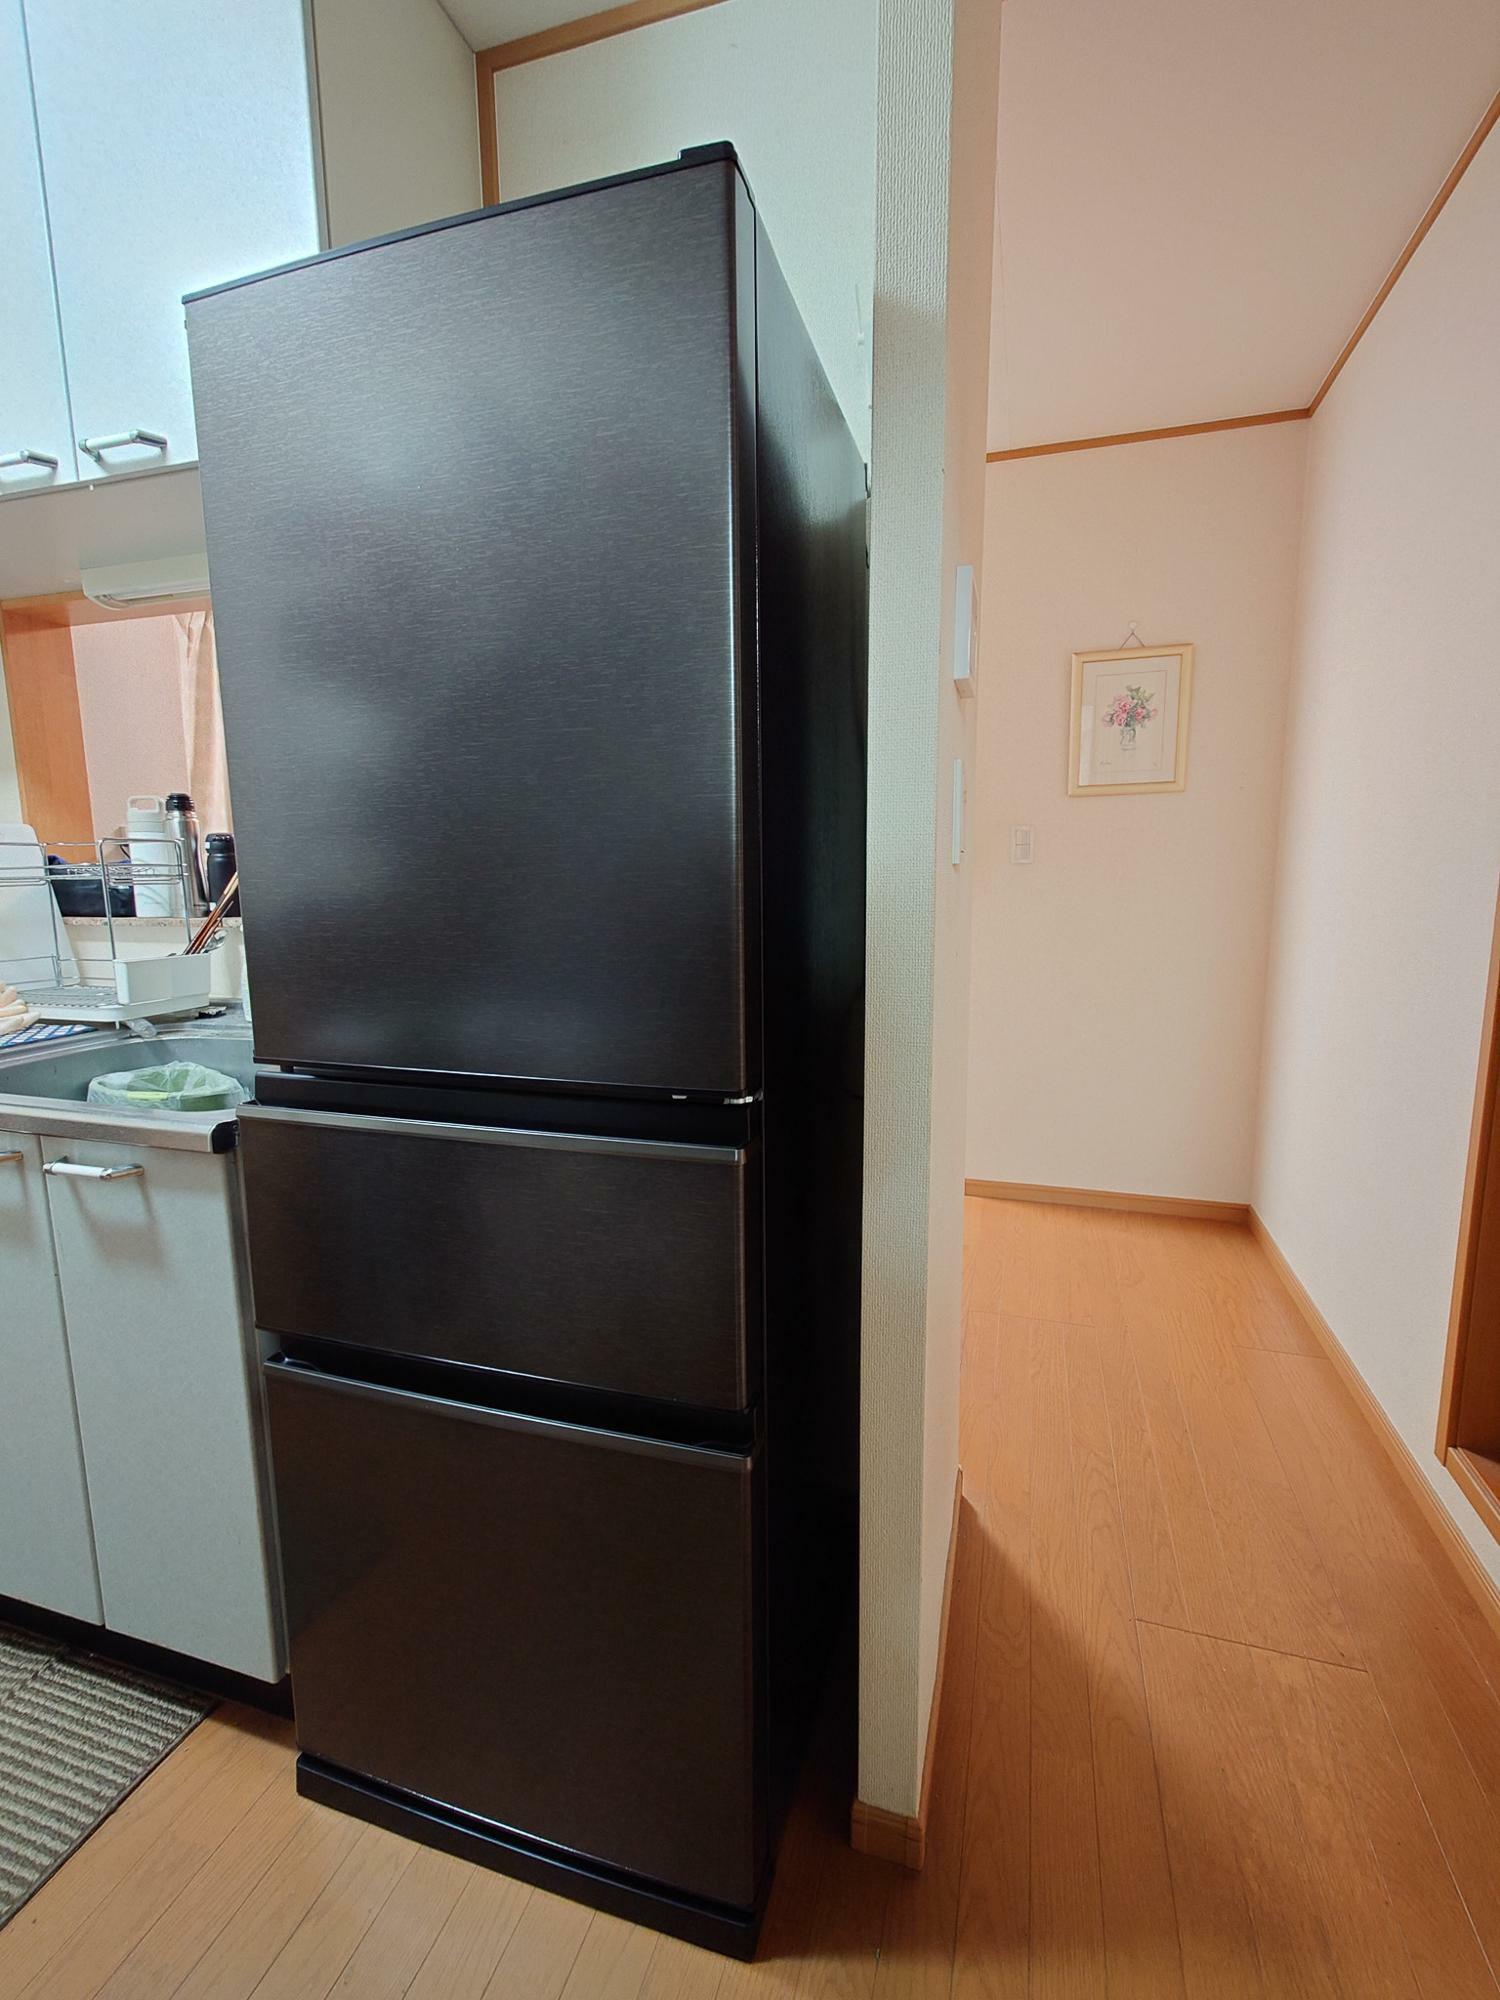 結婚後初めて買い換えた冷蔵庫は容量をぐっと抑えたコンパクトサイズ